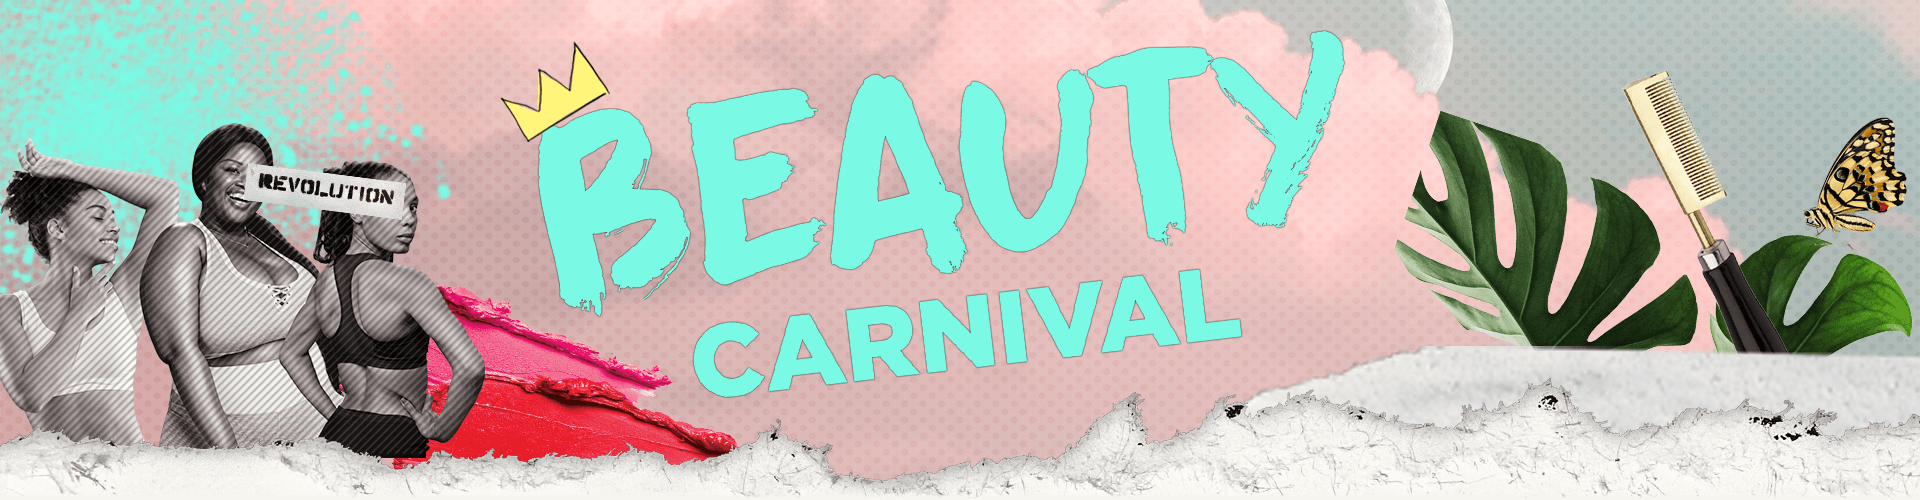 Beauty-Carnival